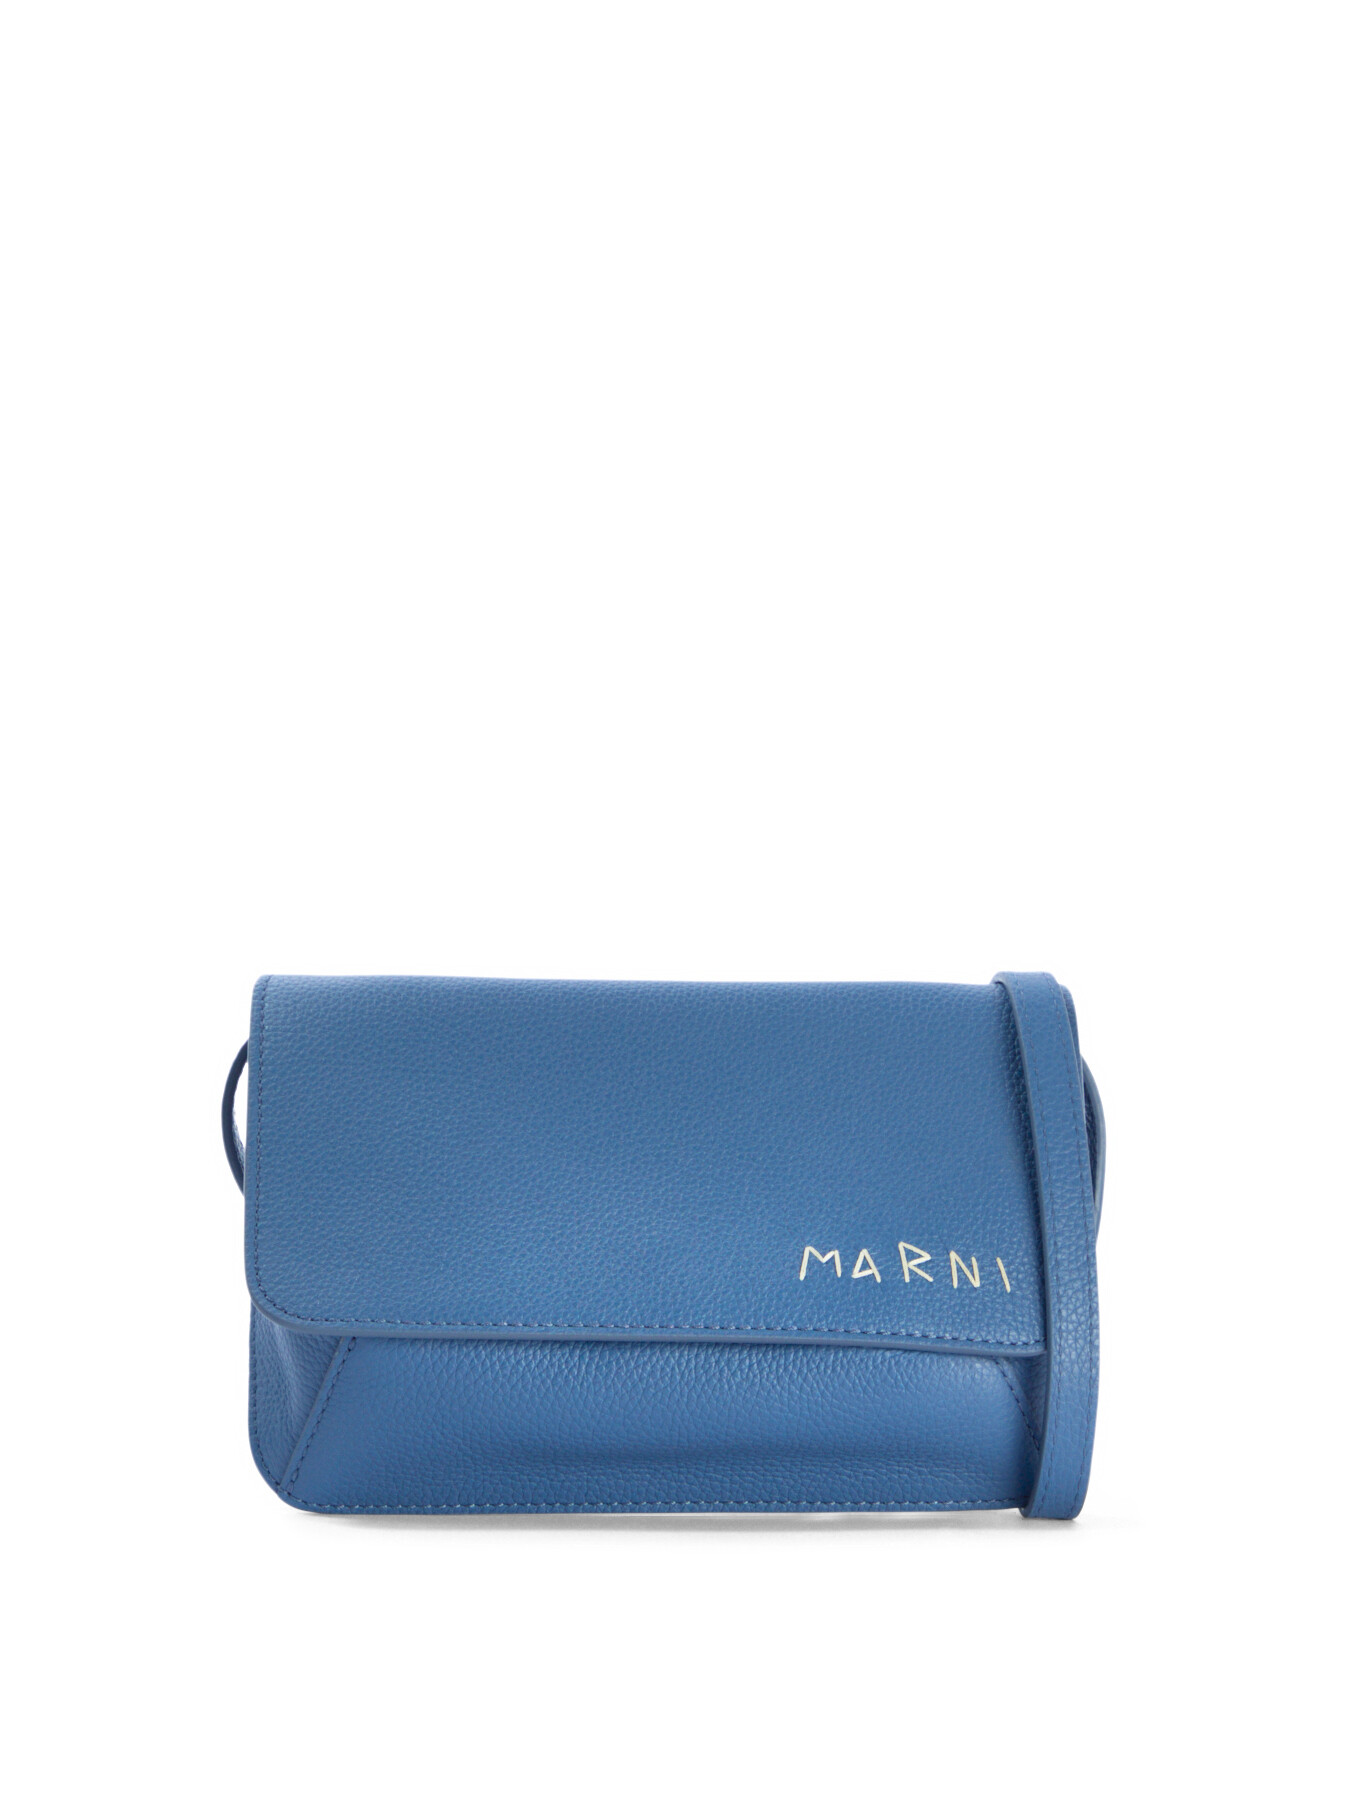 Marni Women's Pochette Flap Blue In Brown